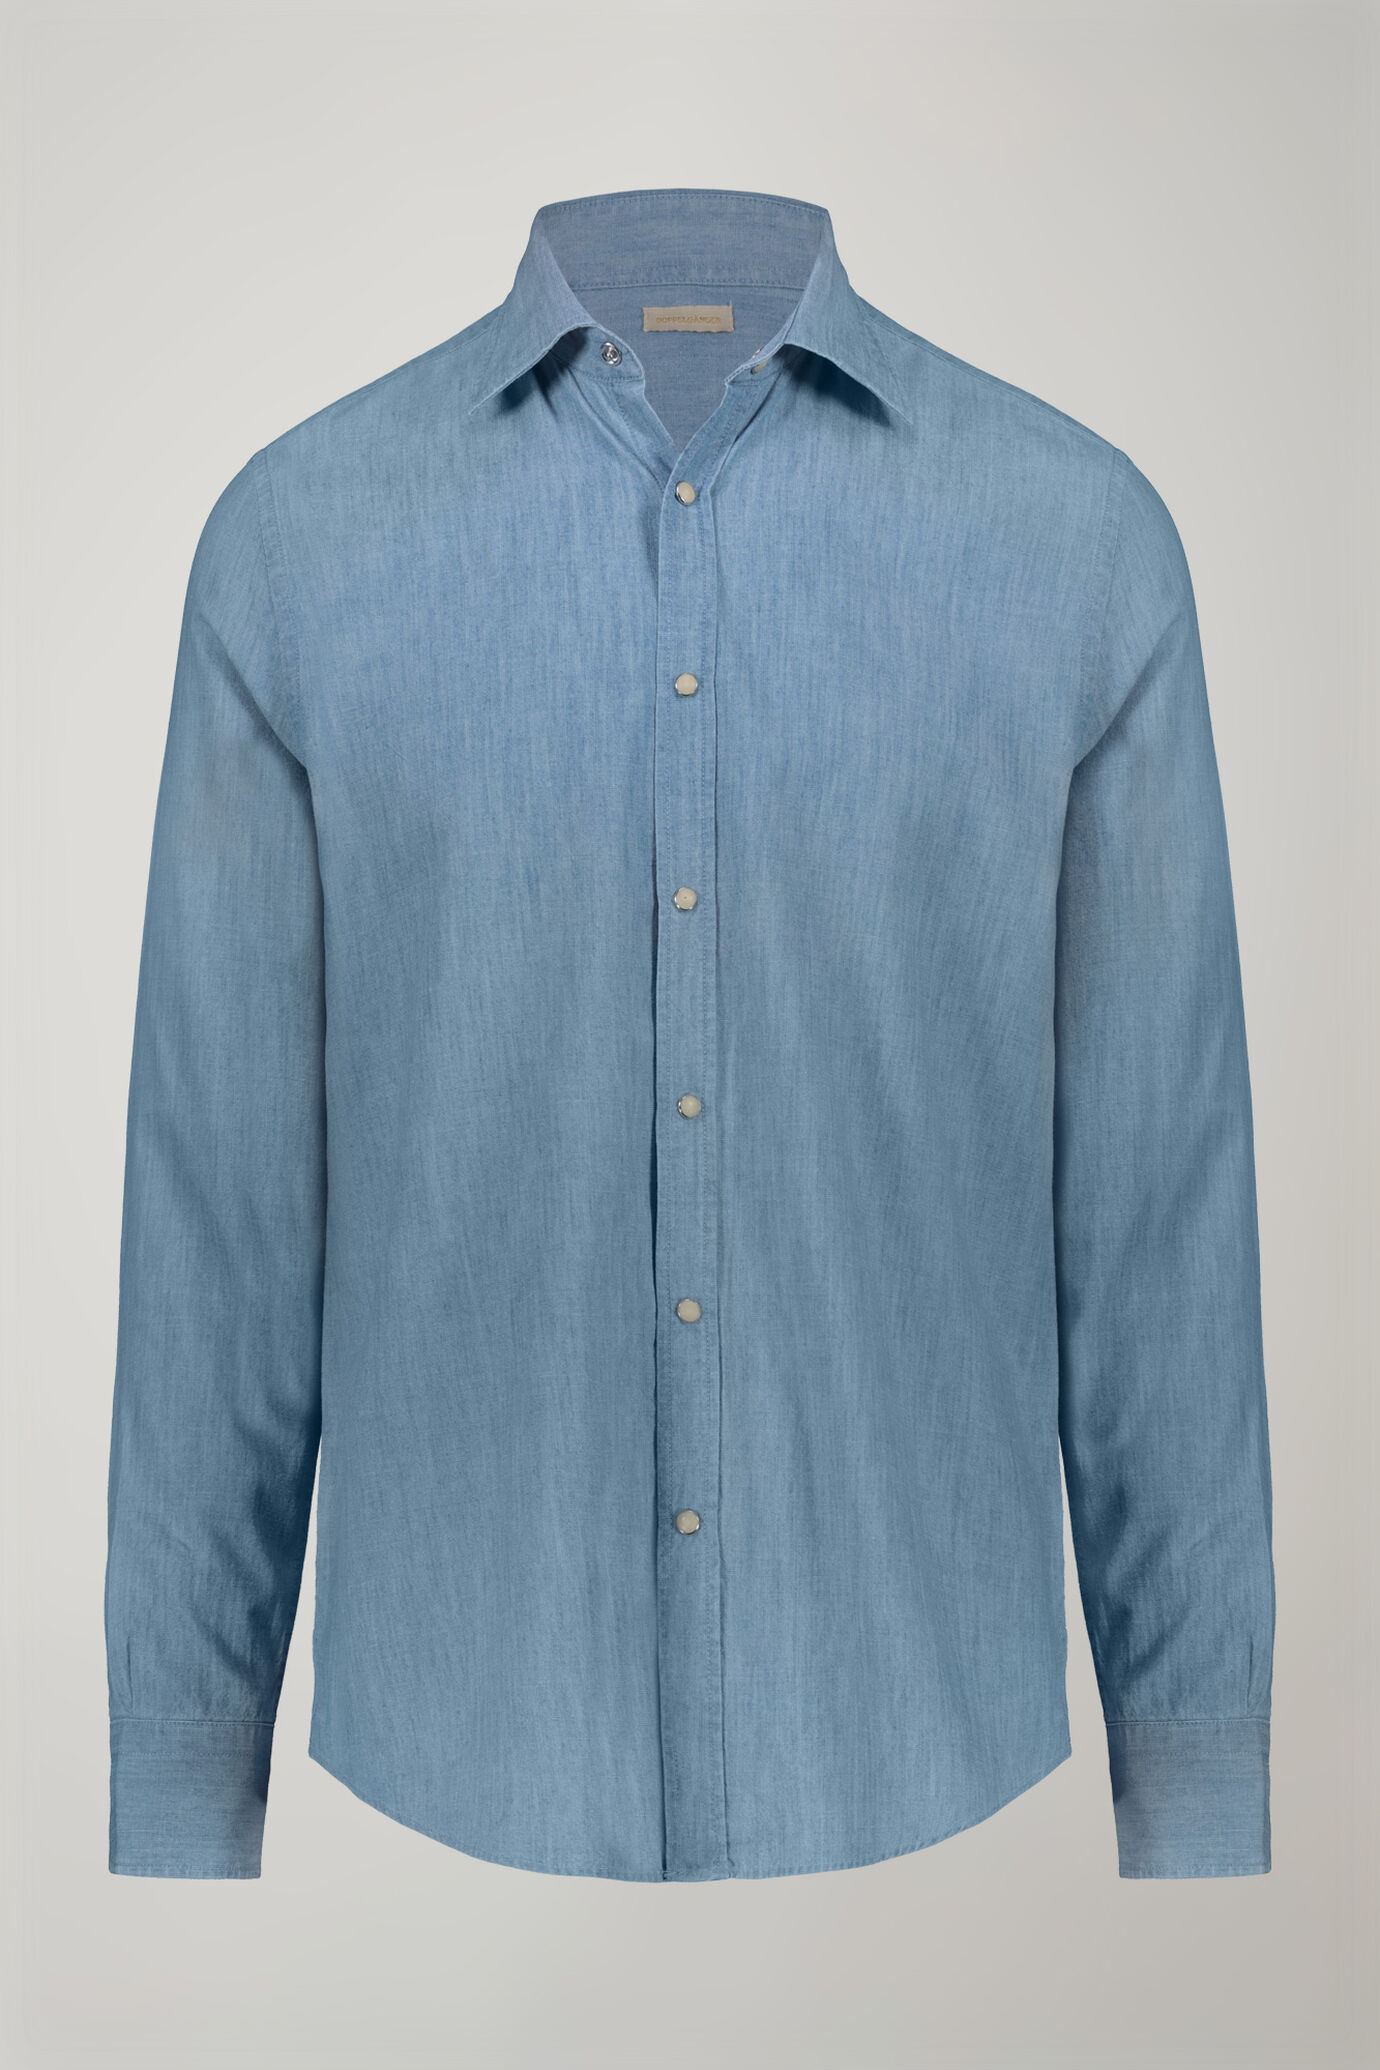 Camicia casual uomo collo classico 100% cotone tessuto chambray denim chiaro comfort fit image number 5